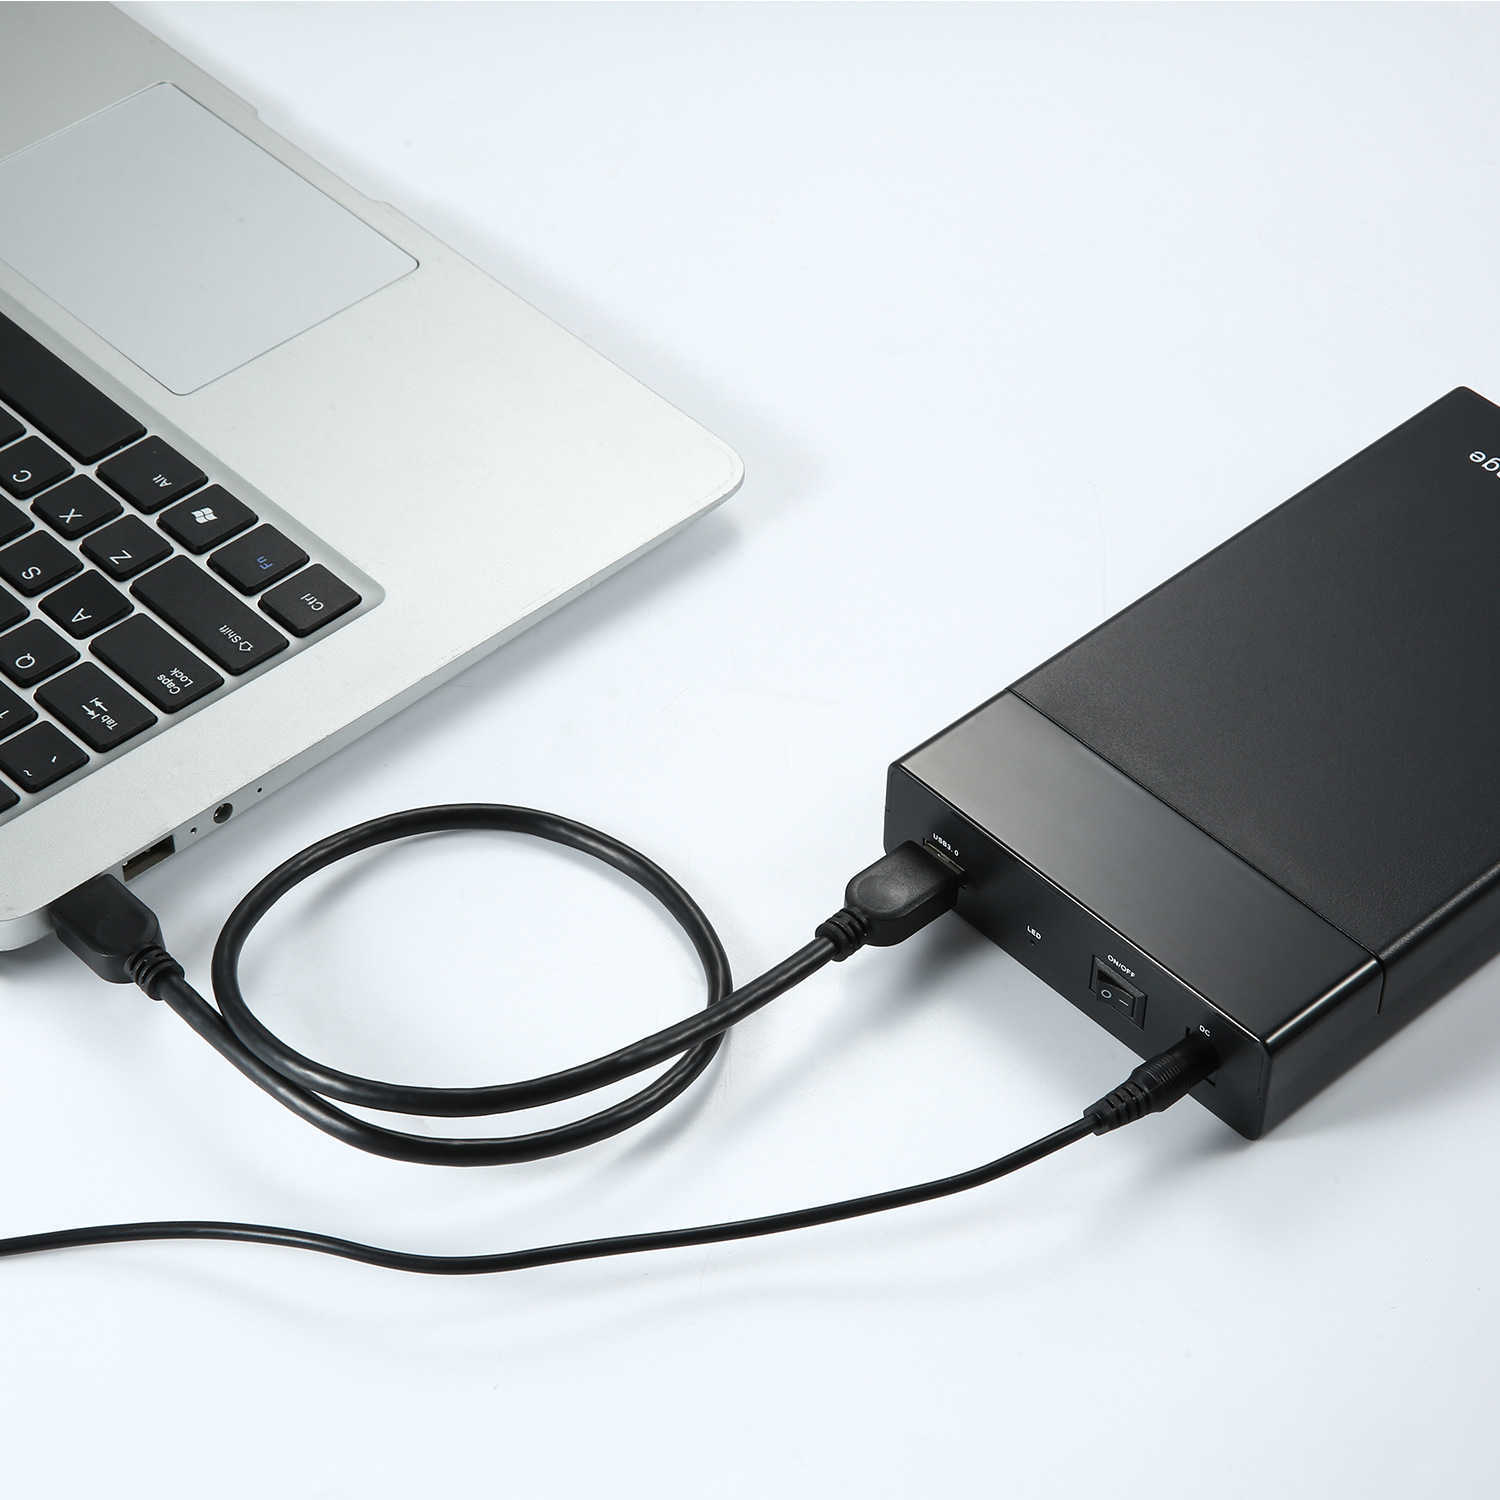 5Gbps USB 3.0 Caixa de disco rígido móvel 2,5 3,5 polegadas SATA suporta várias unidades mecânicas e estado sólido SSD